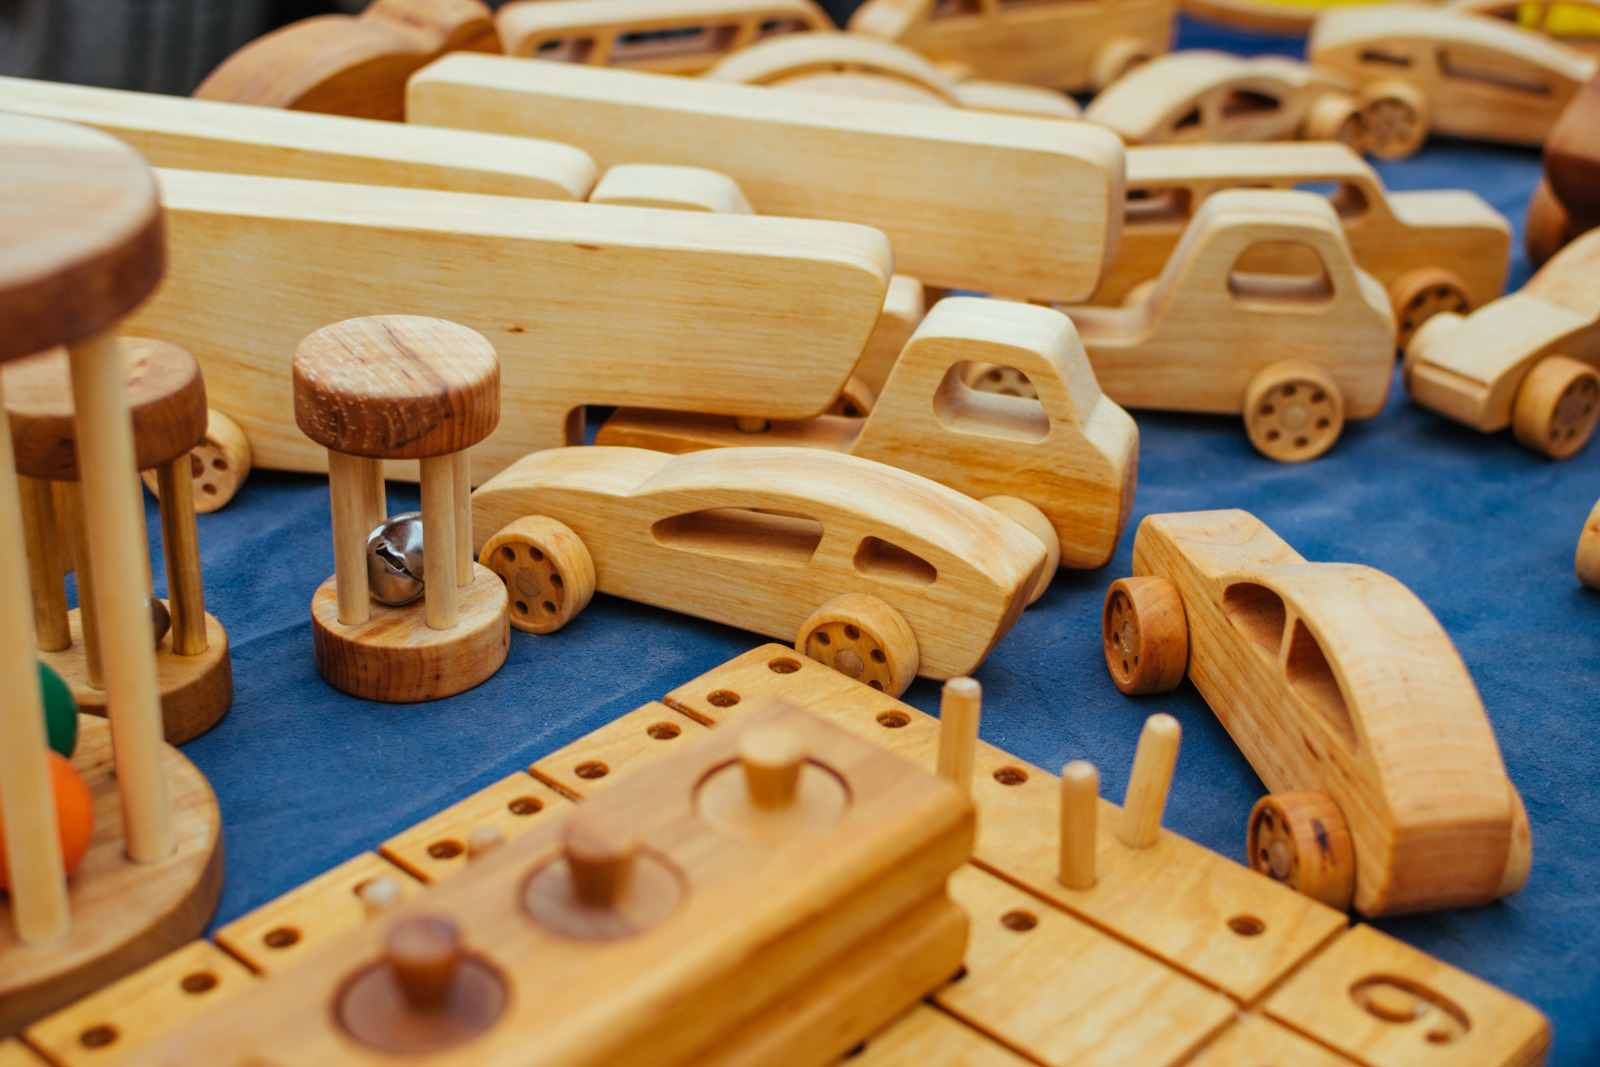 Wooden toys. Photo by Irrmago via Twenty20